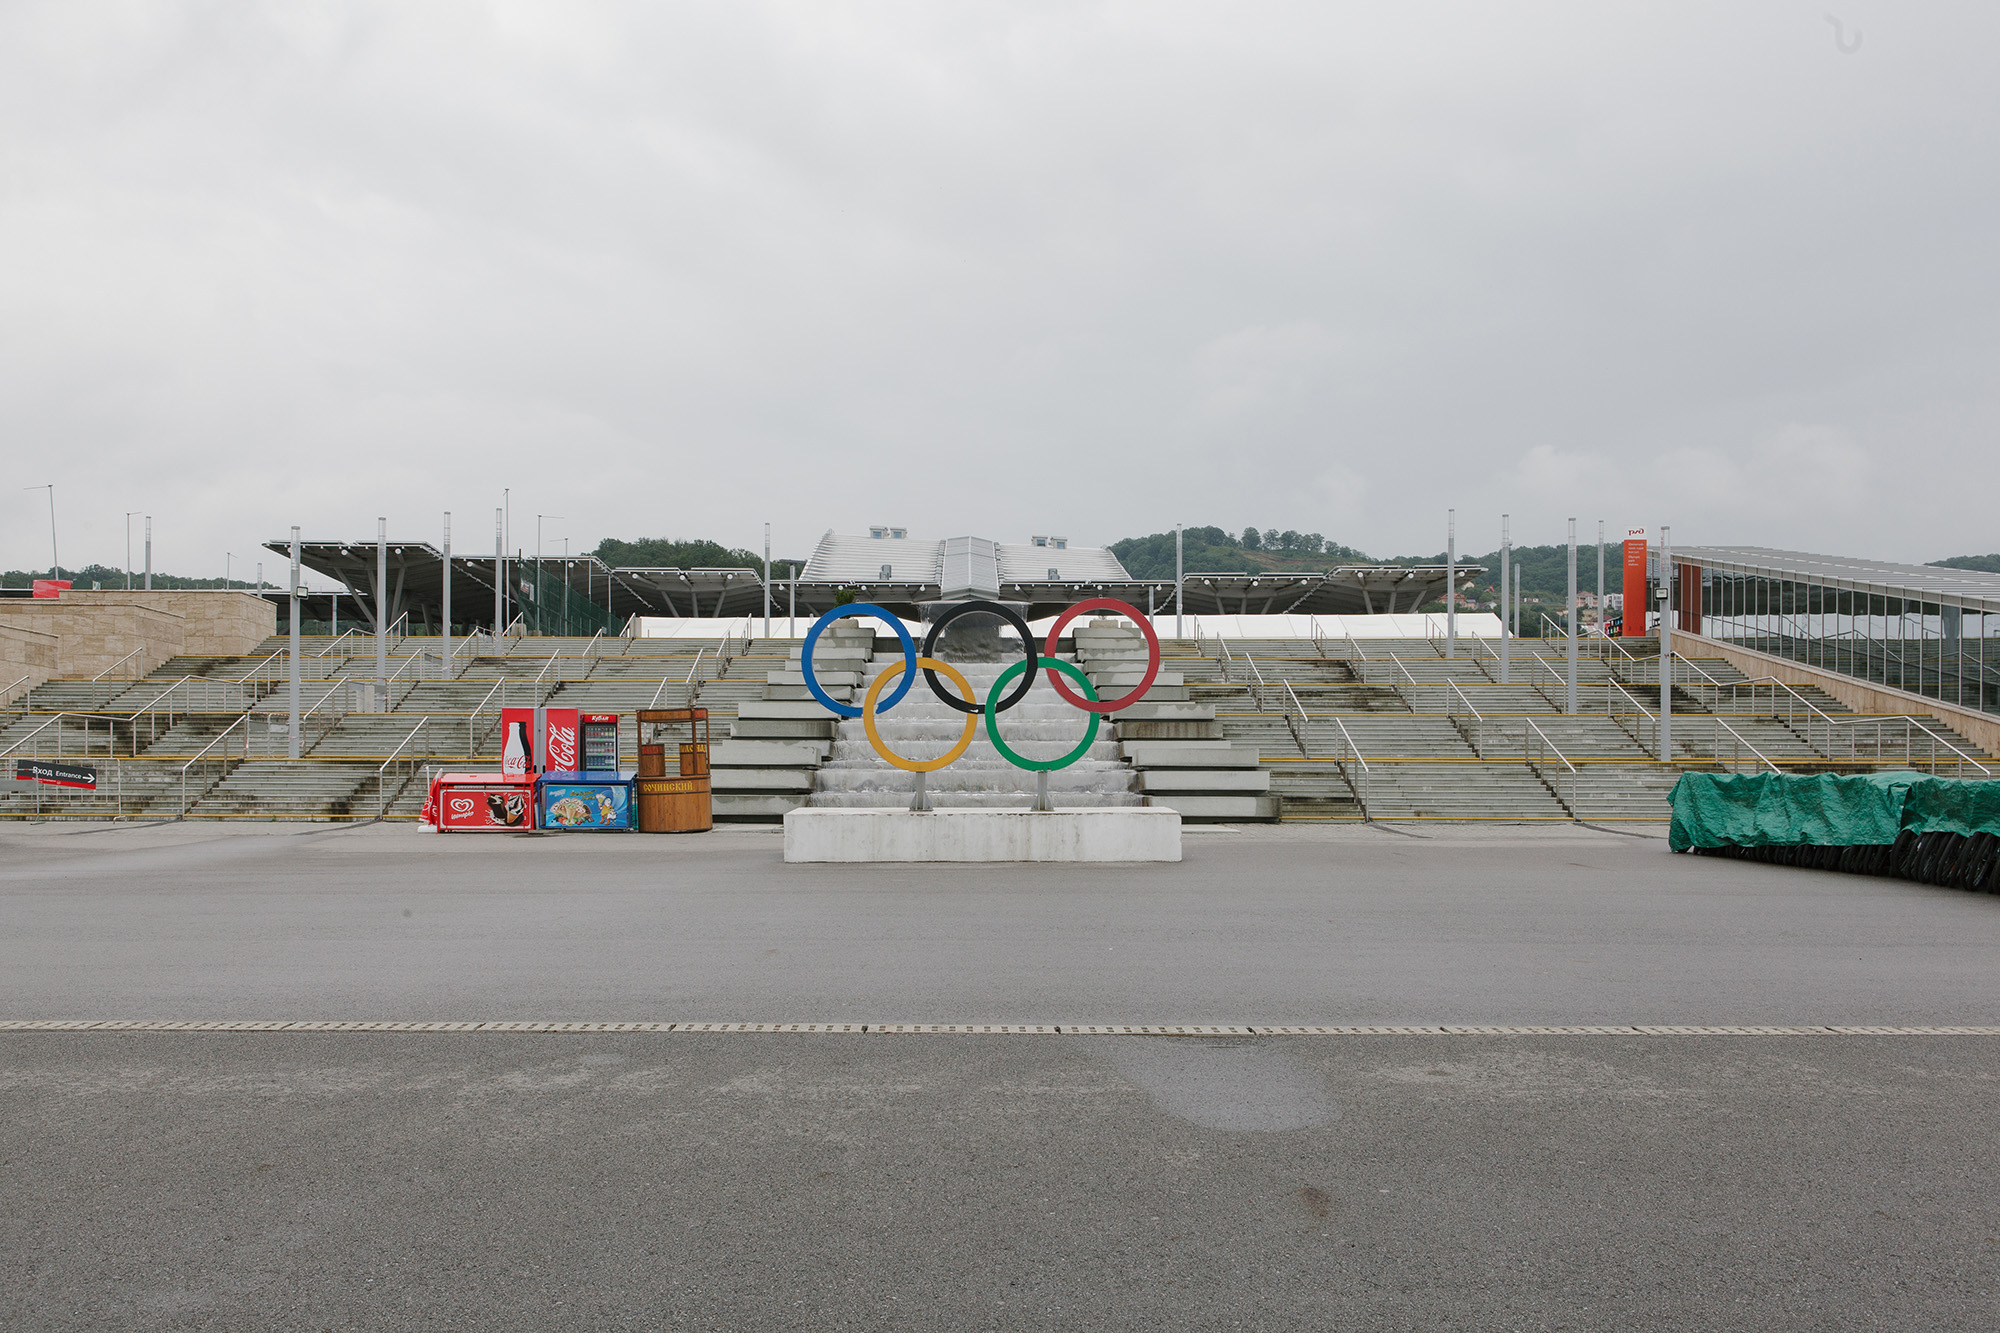 кладбище в центре олимпийского парка в сочи